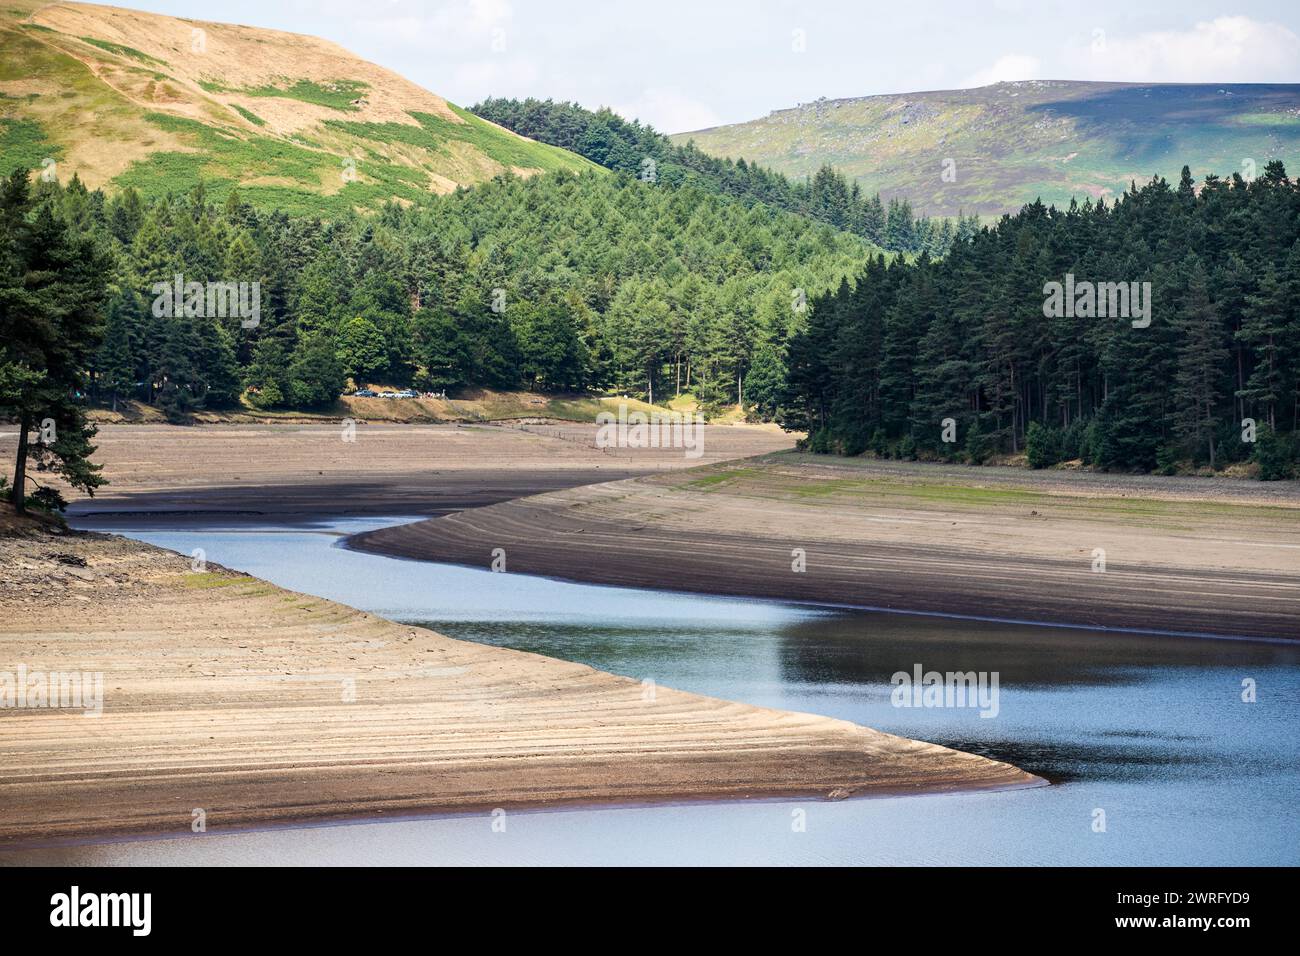 11/07/18 Howden Reservoir. Der Wasserstand im Derbyshire Peak District ist gesunken und zeigt eine Landschaft, die dem früheren Aussehen nahe kommt Stockfoto